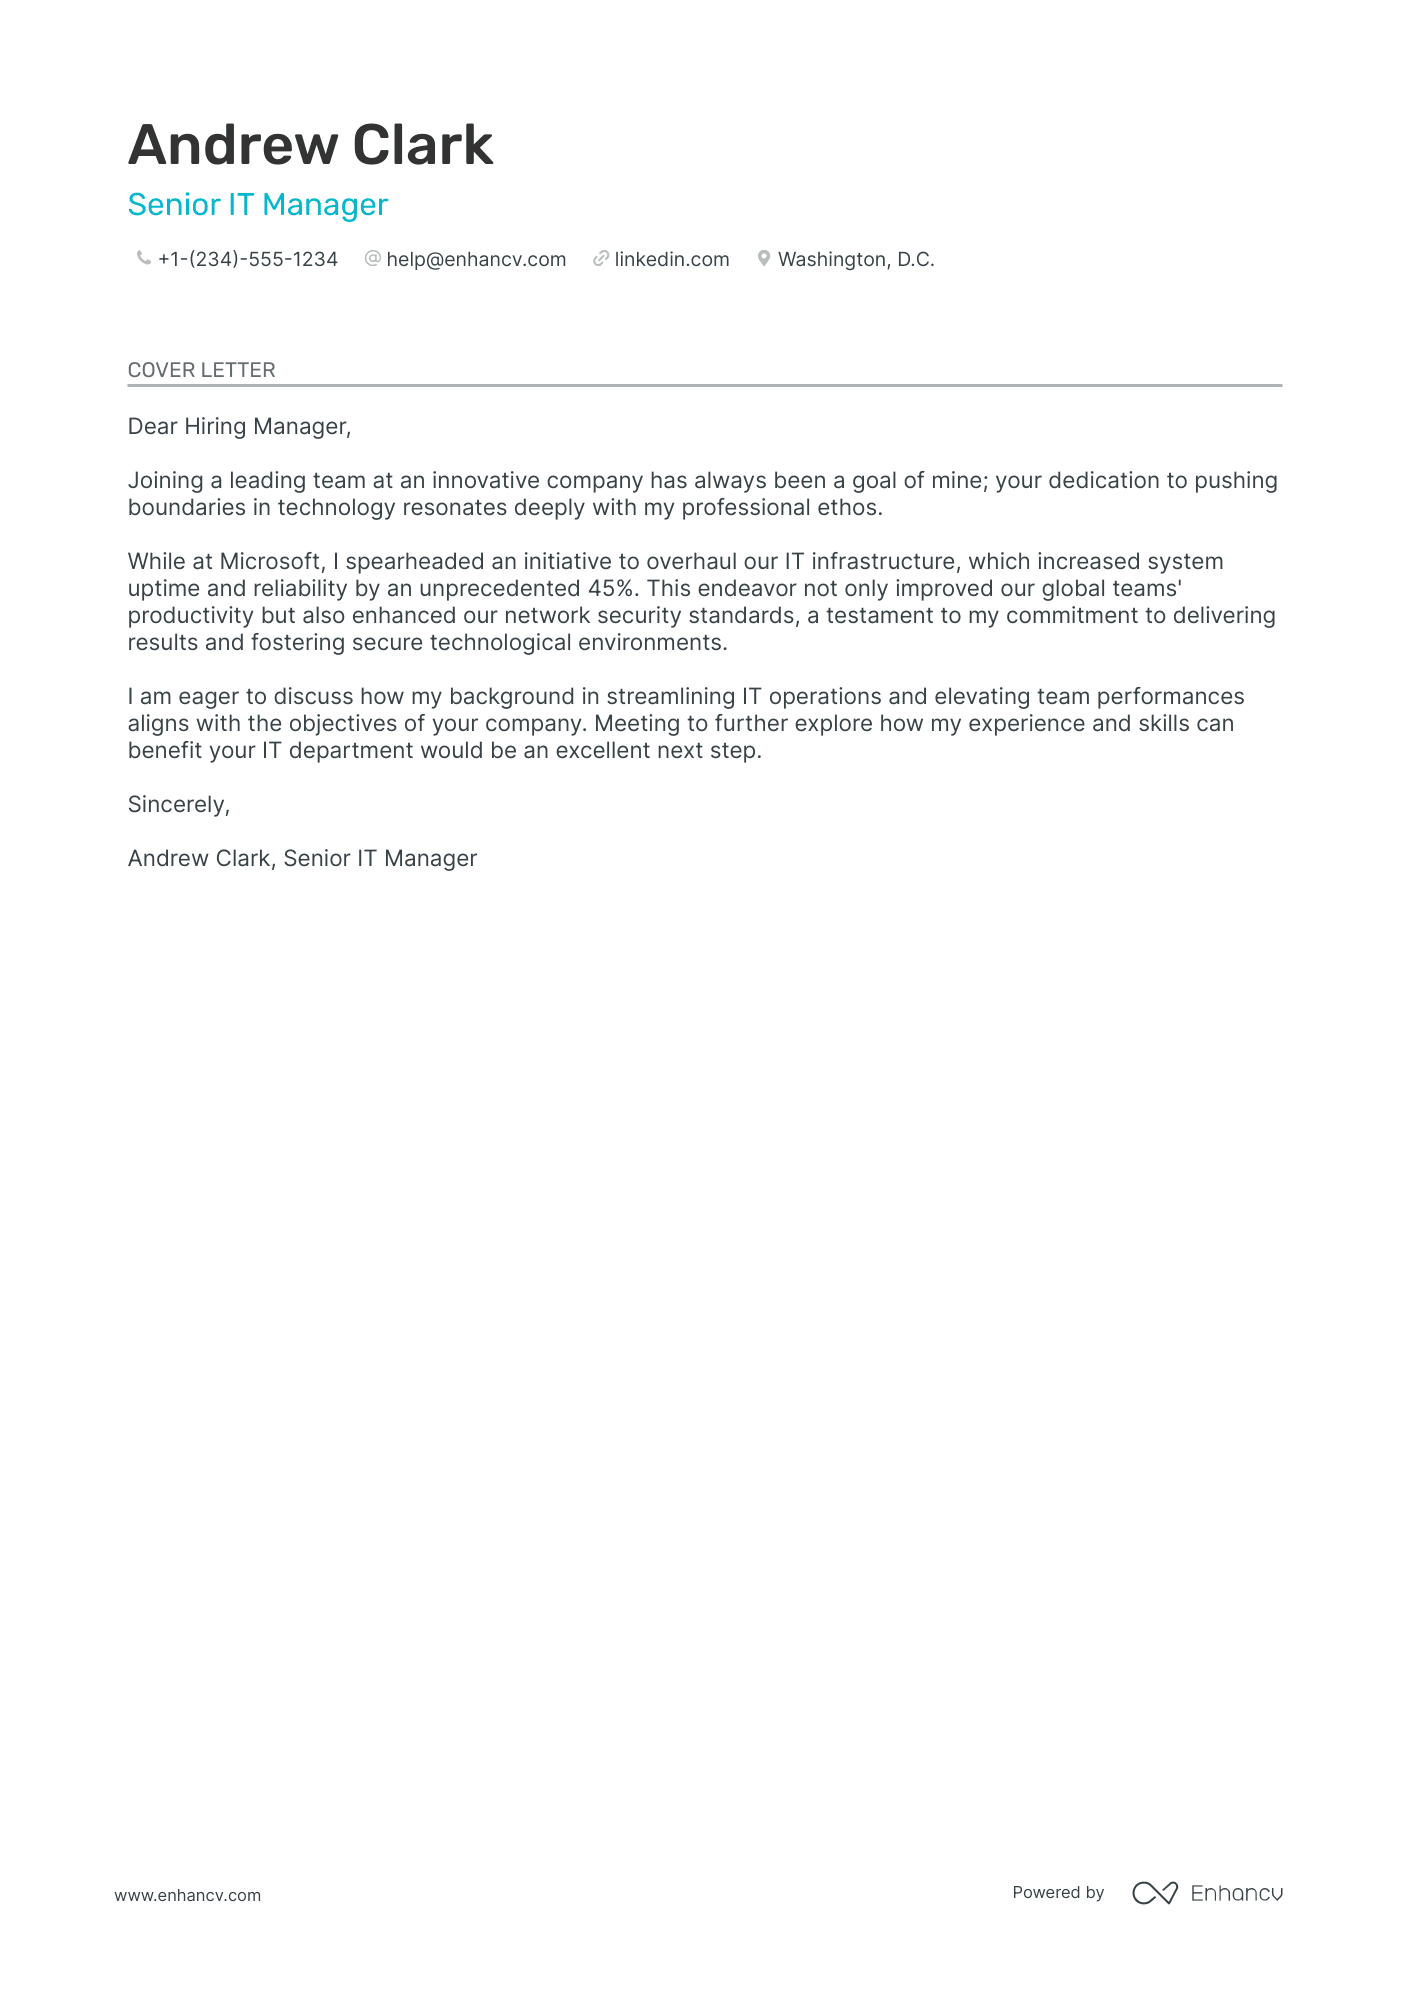 Senior IT Manager cover letter